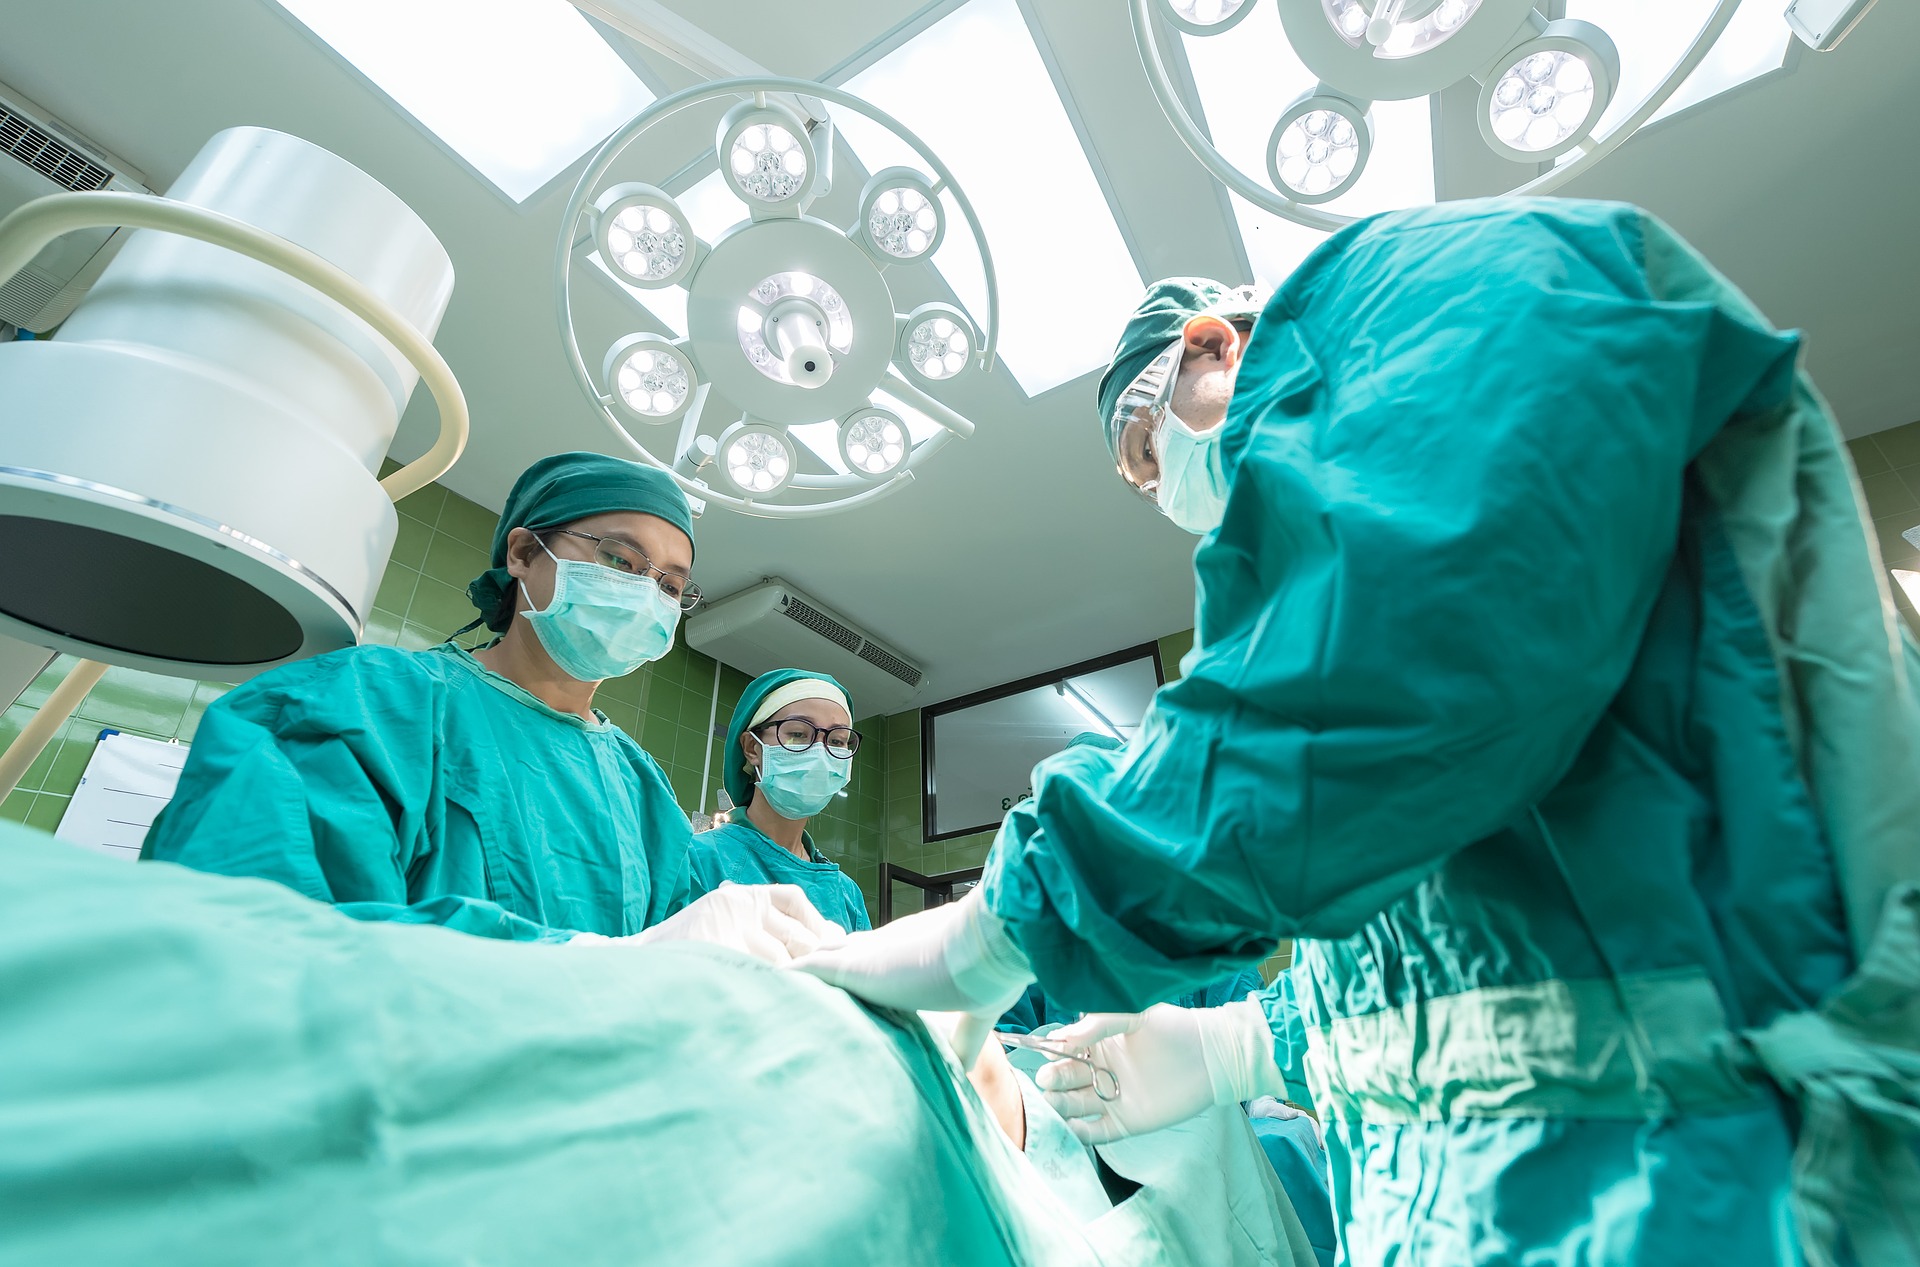 Chirurgen operieren in der Halle. Bild zum Thema: Die OP – Vorbereitung und Eingriff